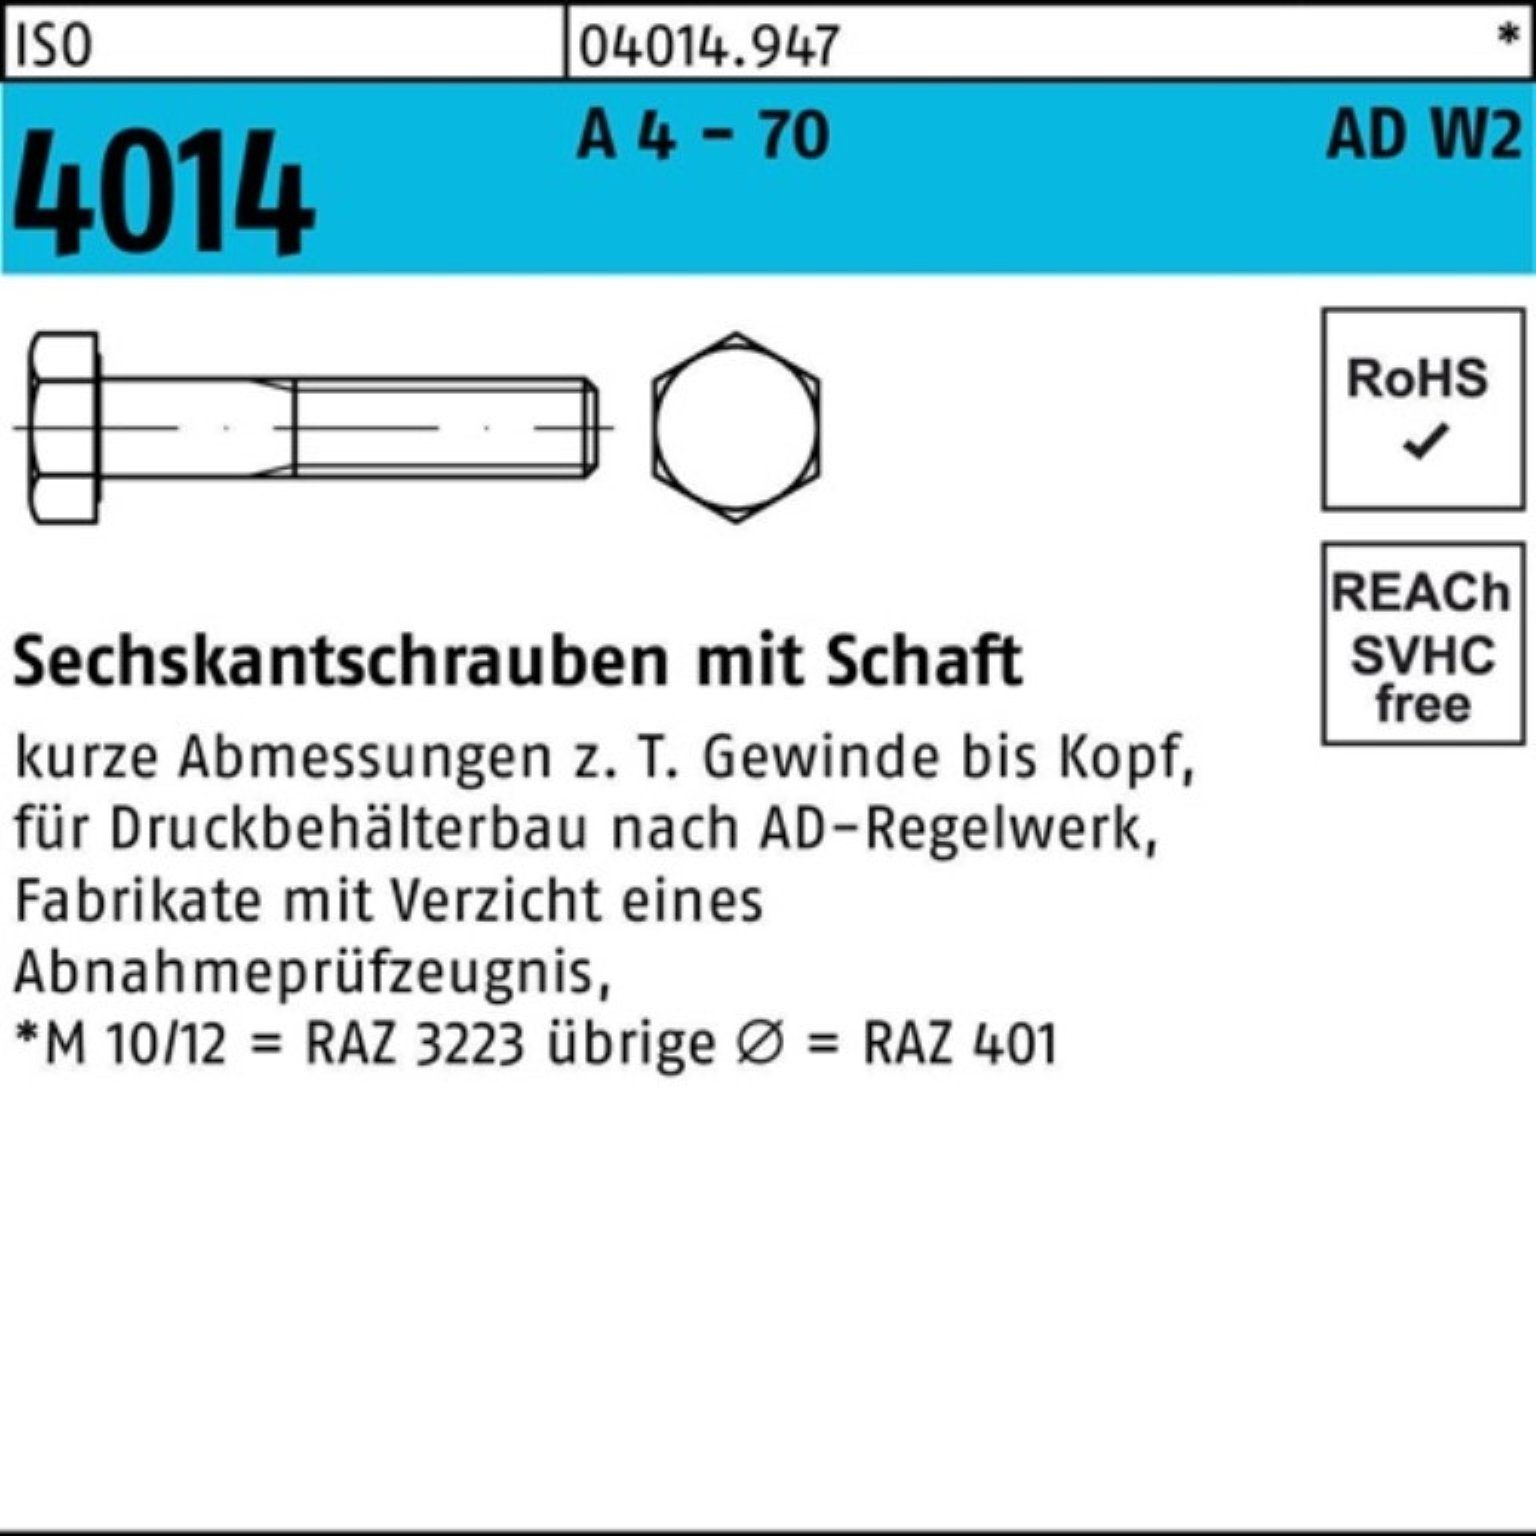 Bufab Sechskantschraube 100er Pack Sechskantschraube ISO 4014 Schaft M10x 70 A 4 - 70 AD-W2 10